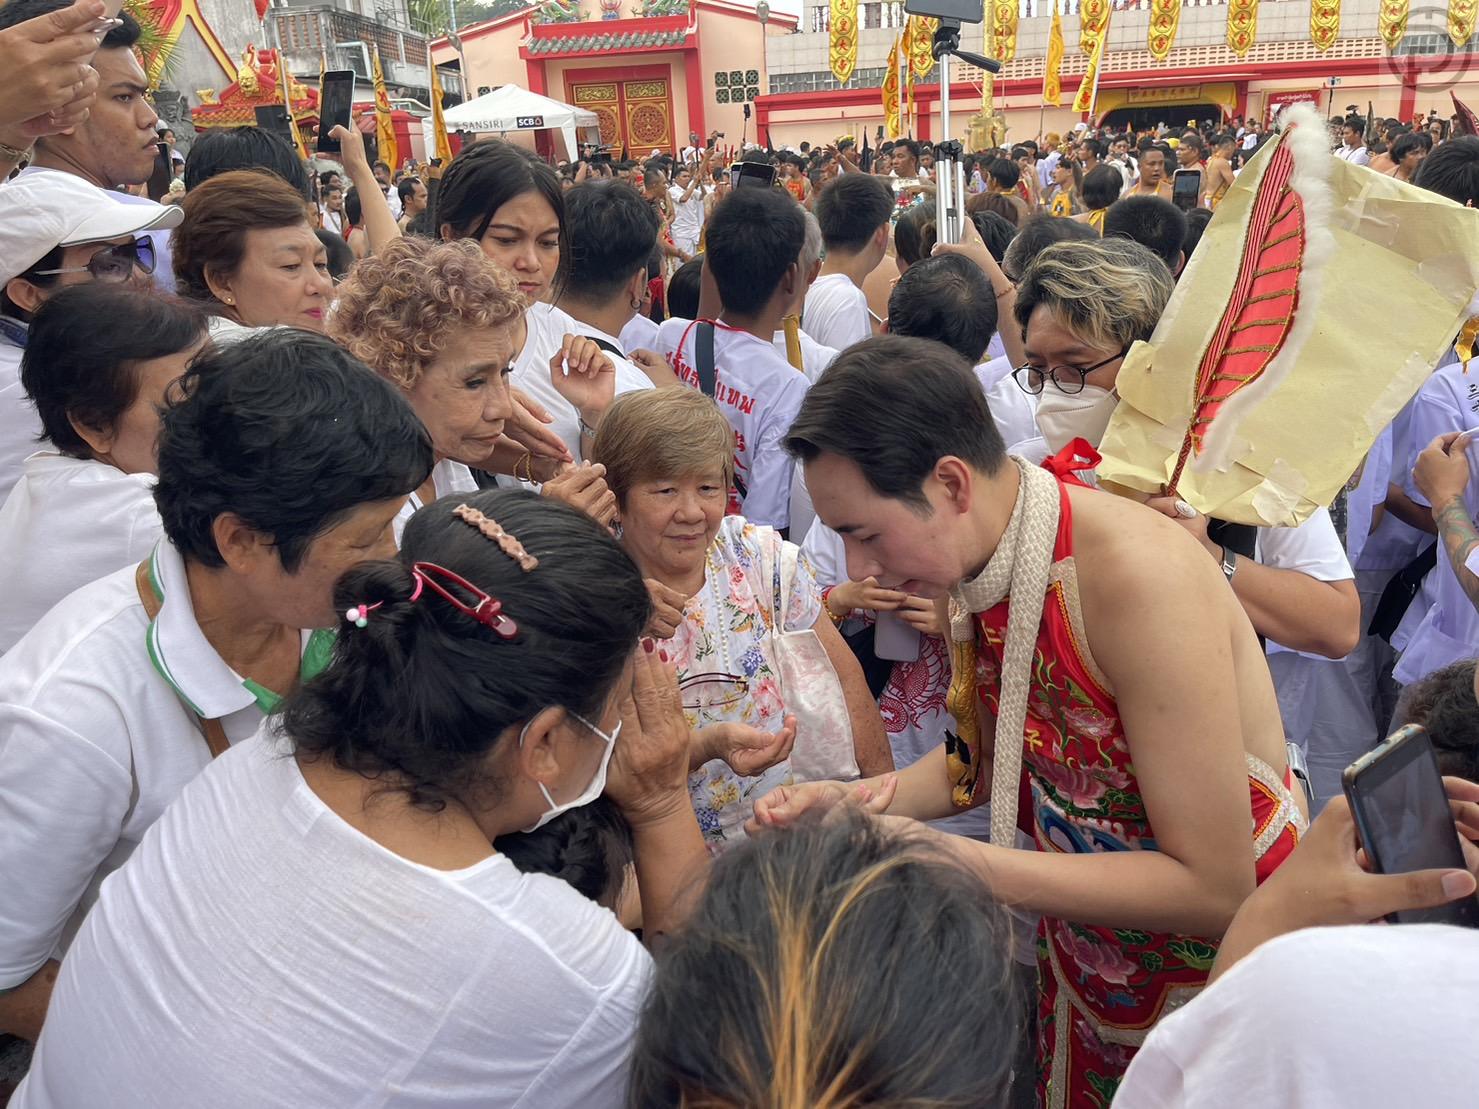 超过 2,000 名信徒参加普吉岛素食街头游行 – 摄影之旅 - The Phuket Express